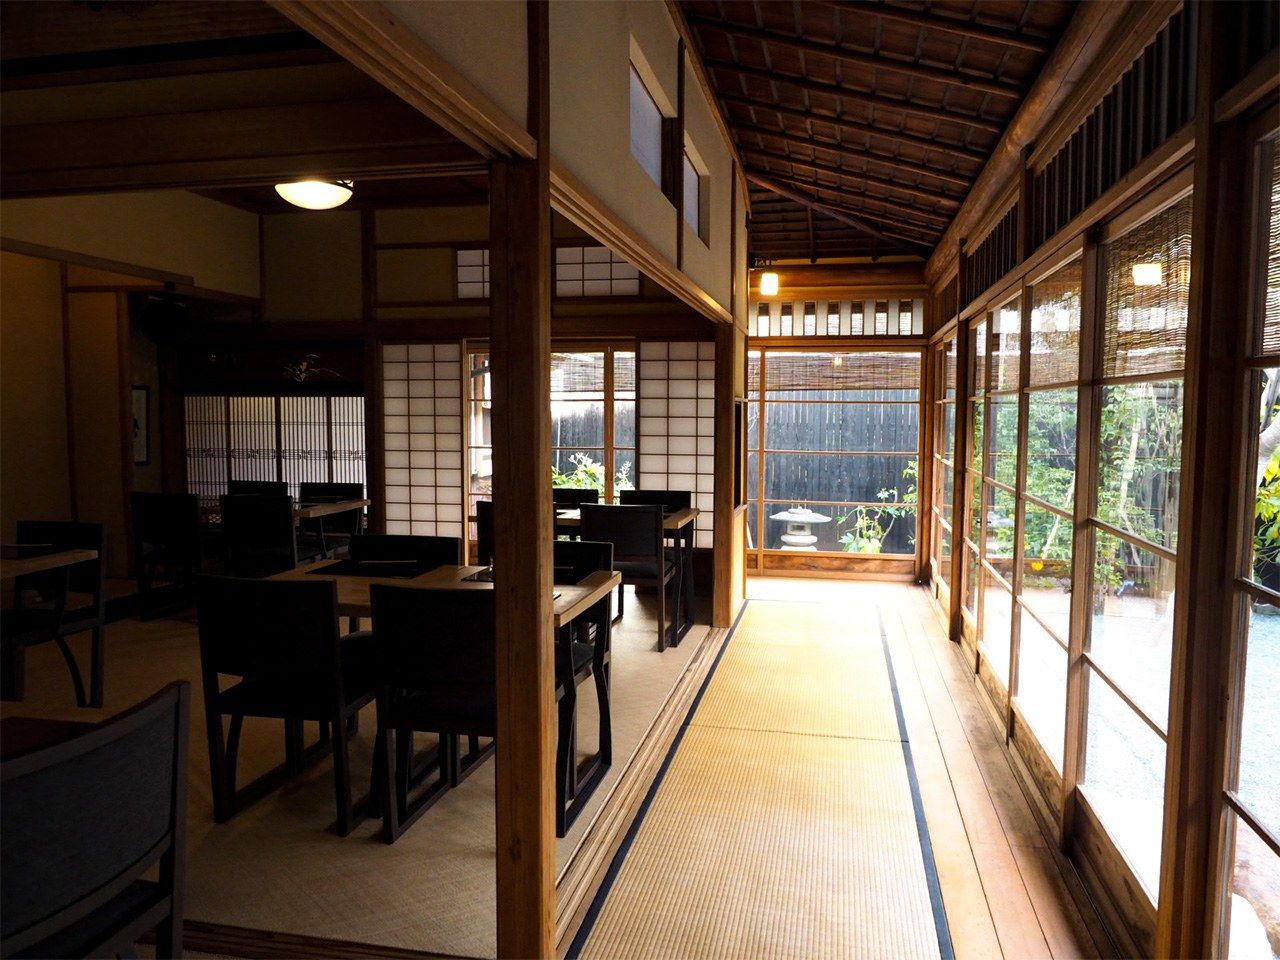 تحتوي إنغاوا على حصائر تاتامي بدلا من الأرضية الخشبية المكشوفة وهو ما يميز المساكن القديمة للسياسيين والشخصيات البارزة الأخرى.